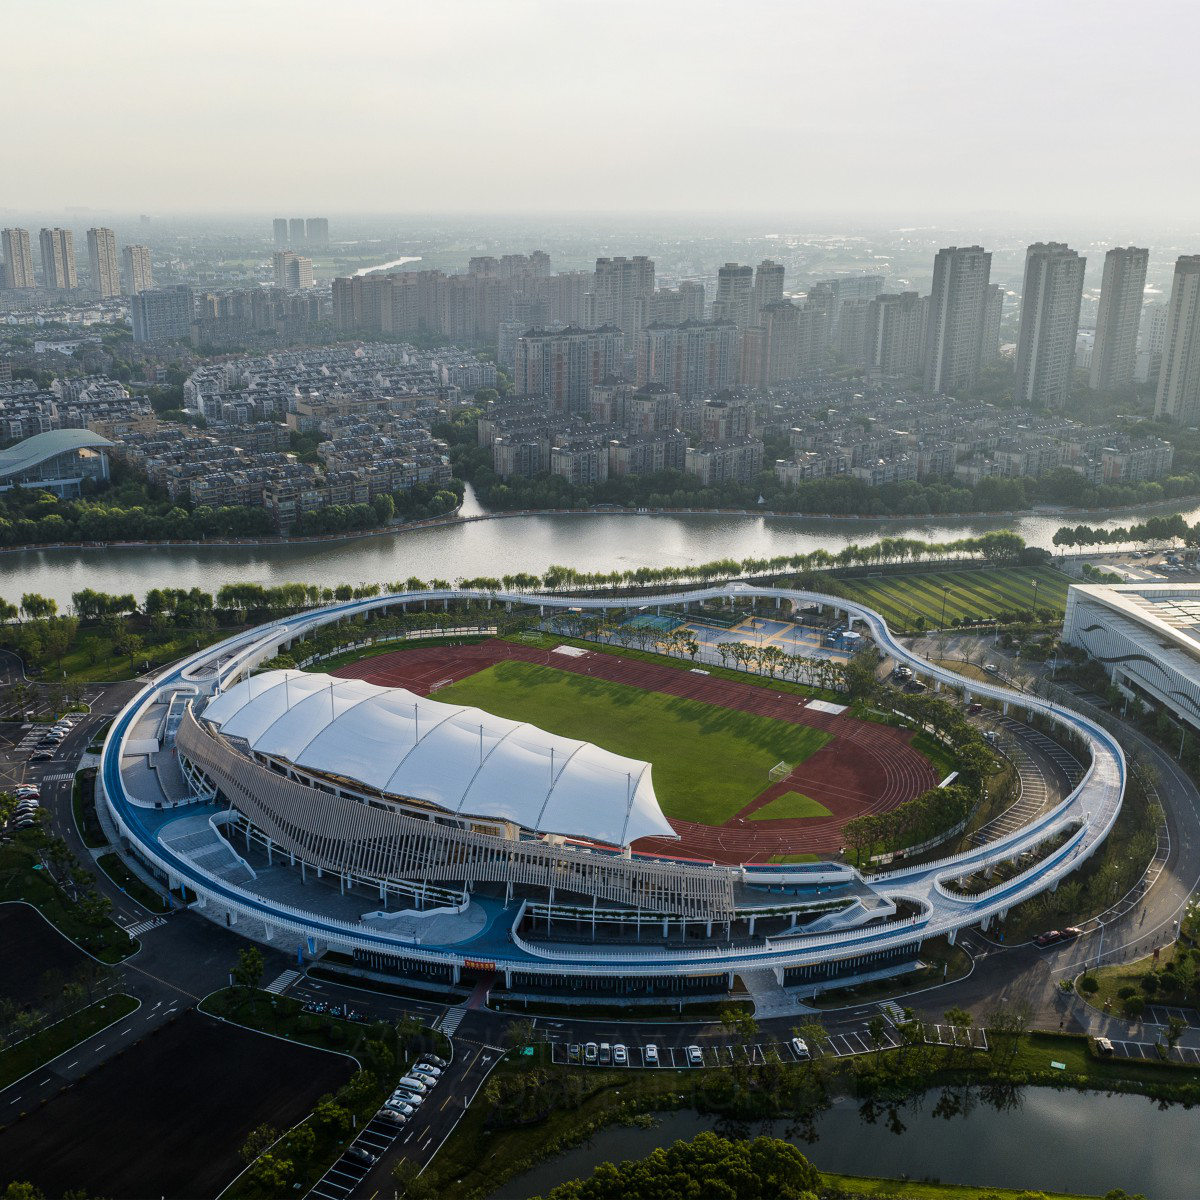 Zhejiang Pinghu Sports Center